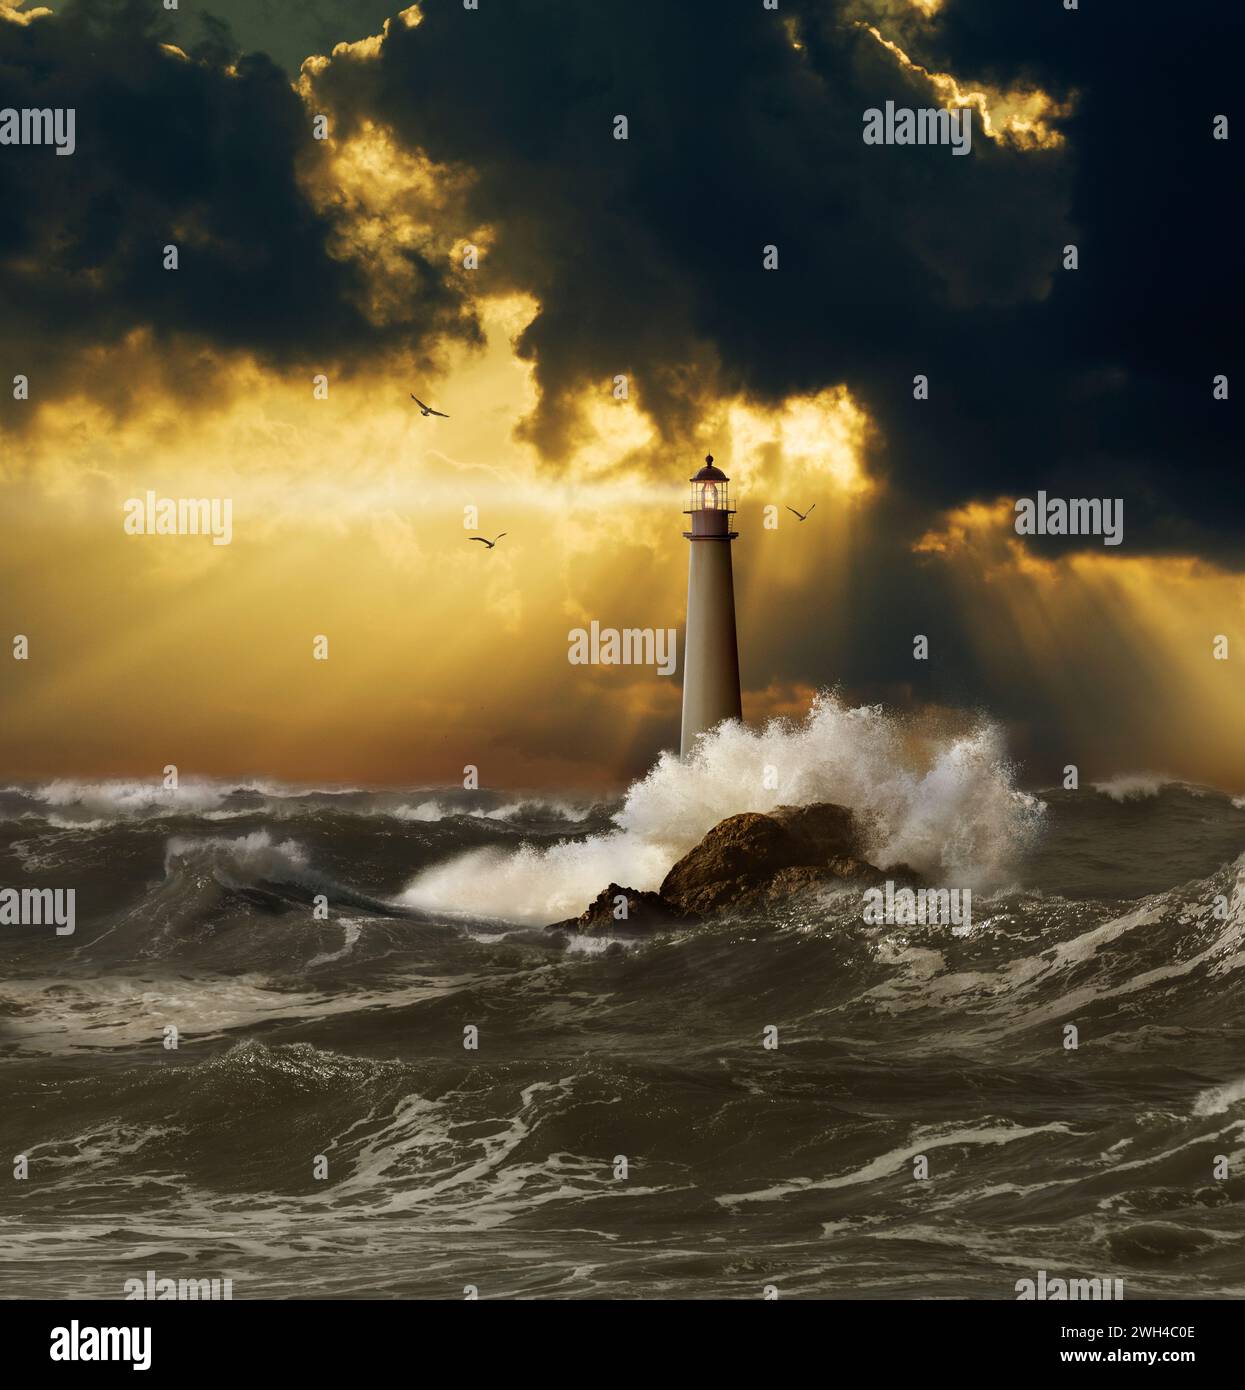 Un beau phare projette son faisceau de guidage au-dessus des mers lancées par des tempêtes sous des nuages d'orage de rayon Dieu dans une image de sécurité, de guidage et de sécurité. Banque D'Images